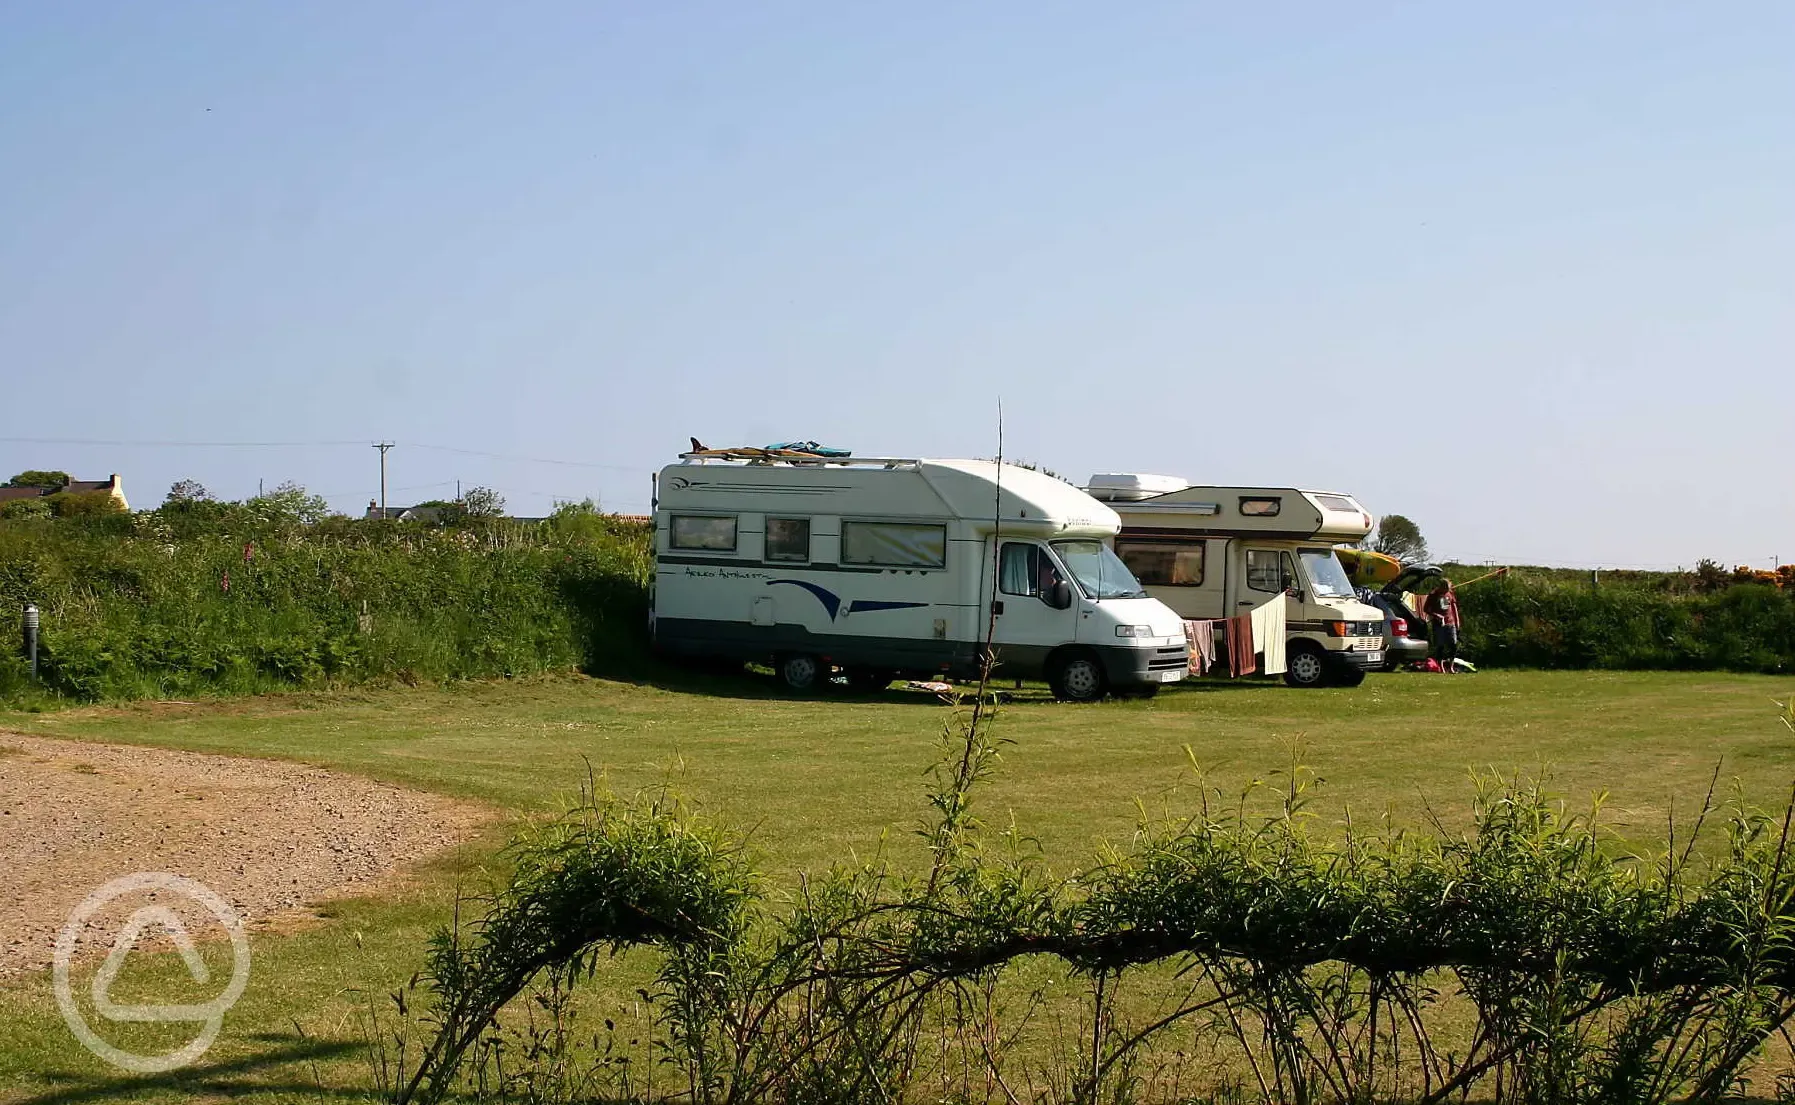 Caravan pitches at Glan-y-Mor Campsite